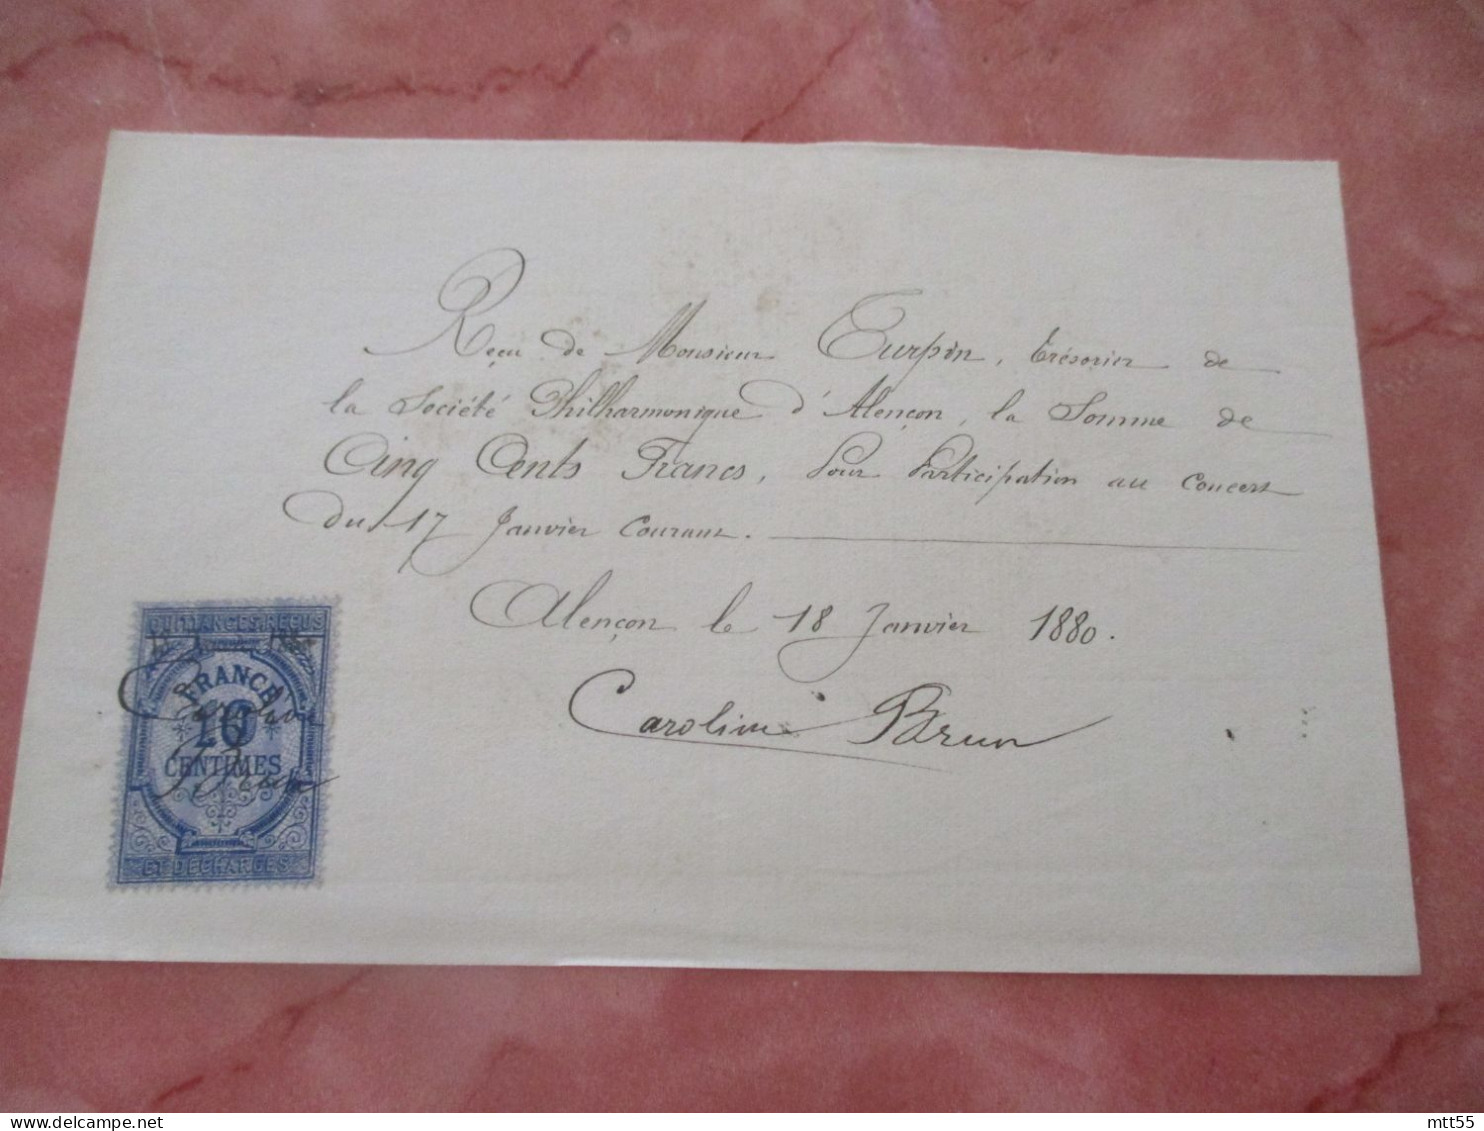 CAROLINE BRUN CHANTEUR CONSERVATOIRE QUITTANCE MANUSCITE TIMBRE FISCAL 1885 CONCERCERT A ALENCON AUTOGRAPHE - Manuscripts